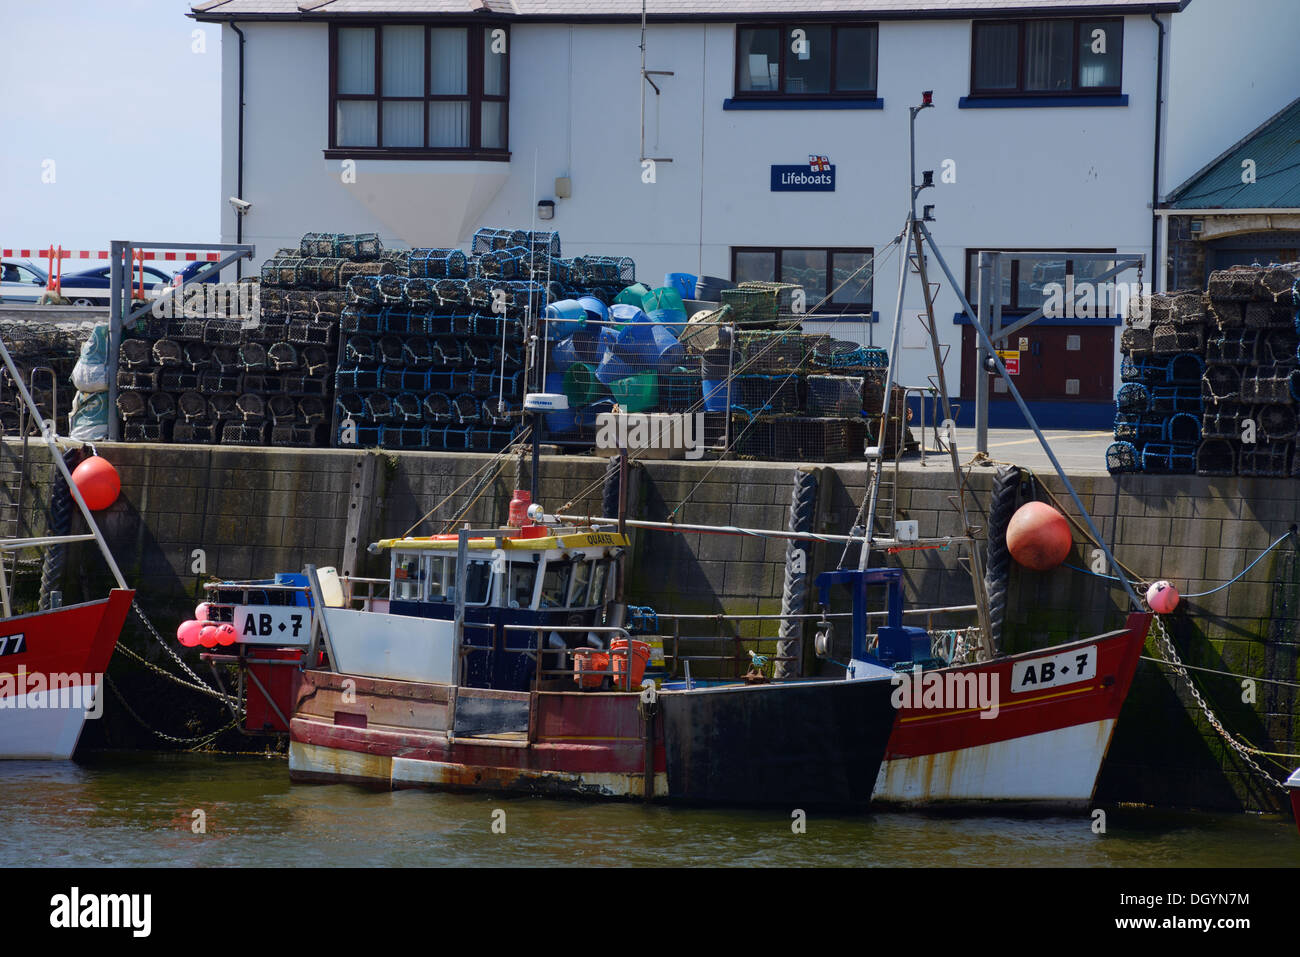 La pesca dell'aragosta barca ormeggiata in banchina con aragosta cantre, pentole in background, Aberystwyth, Wales, Regno Unito Foto Stock